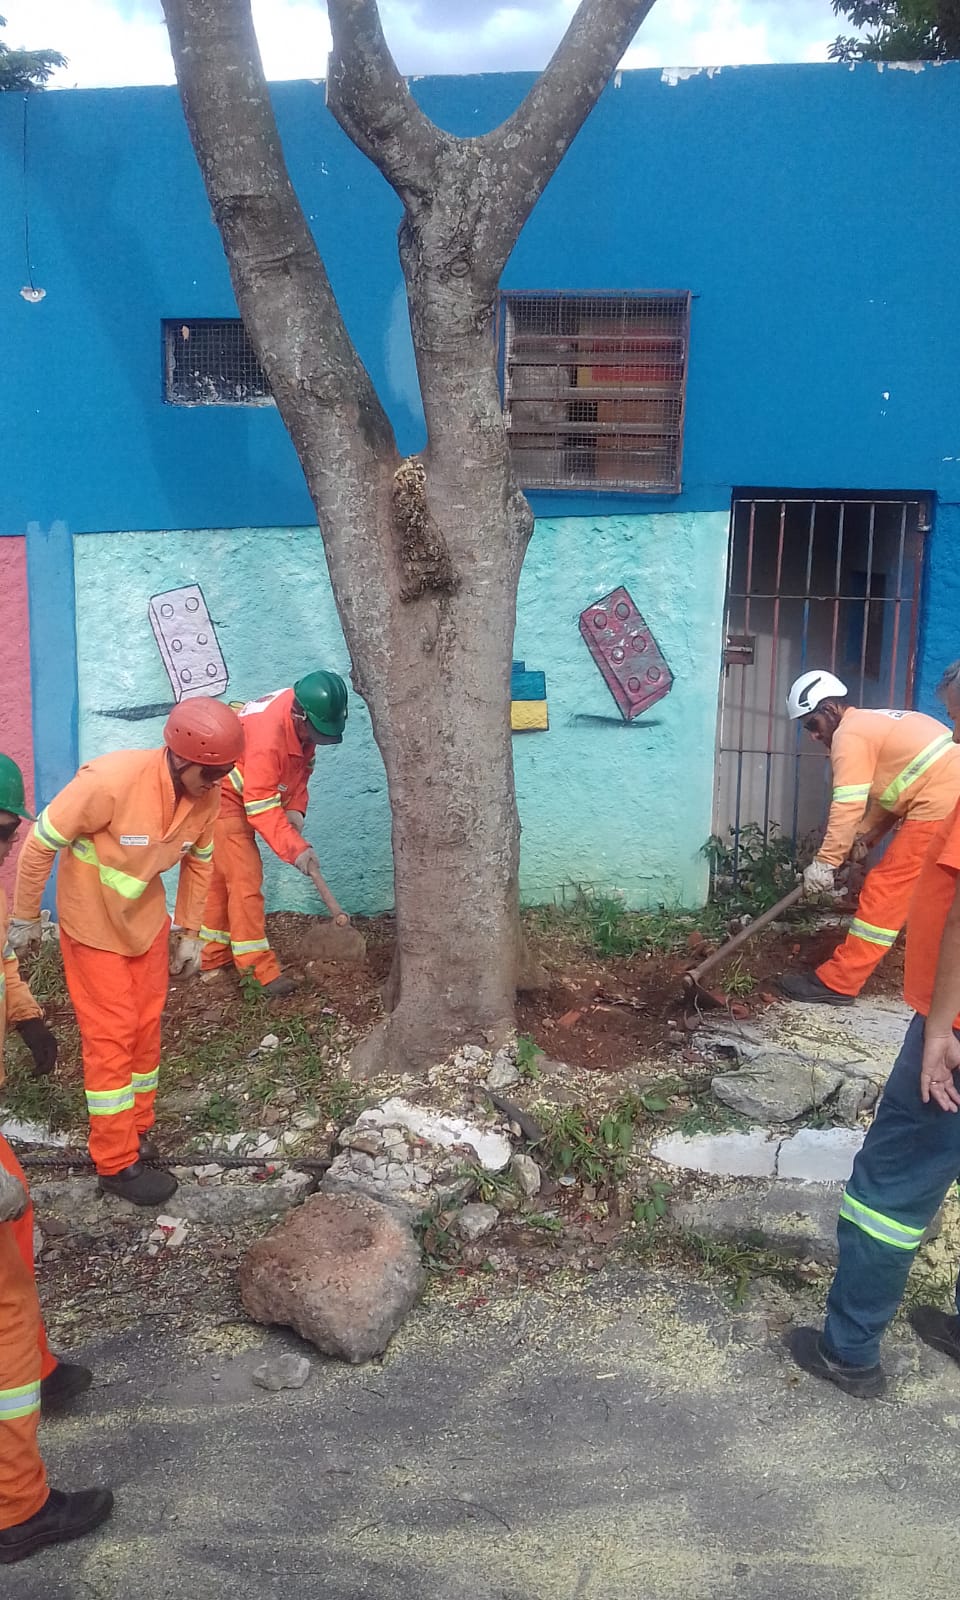 #PraCegoVer - Trabalhadores da Subprefeitura escavam em volta de árvore que será removida. Ao fundo há um prédio azul escuro com desenho pintado em azul claro.